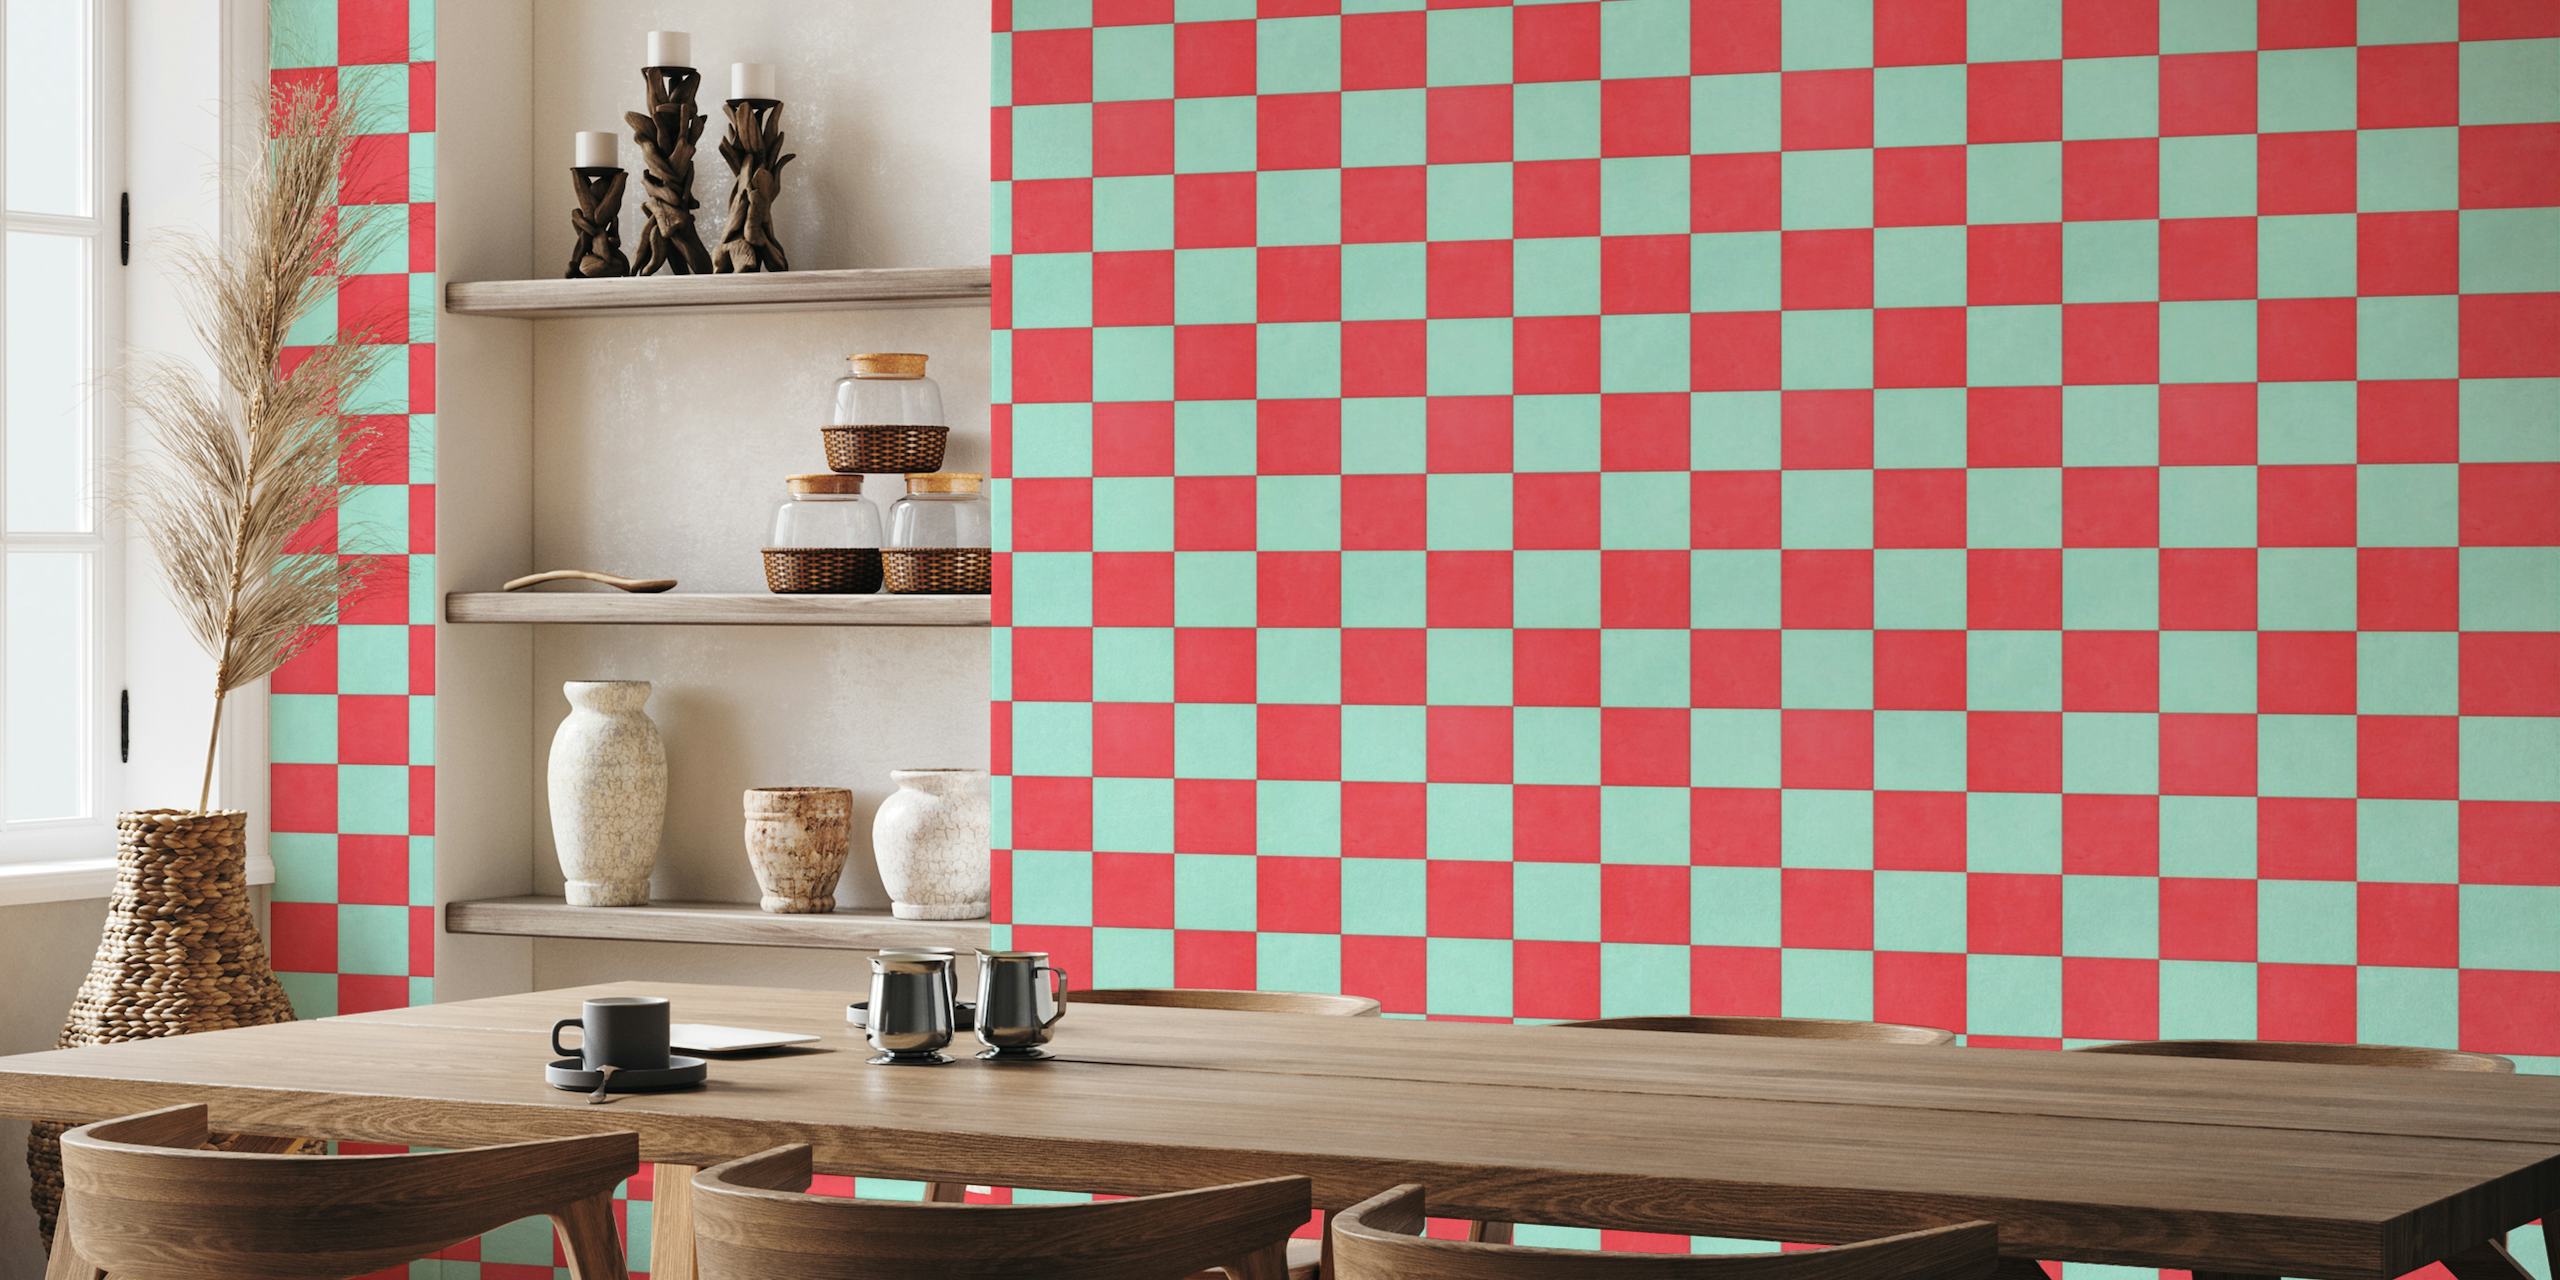 Fototapeta w czerwono-turkusową szachownicę do wnętrz domowych i biznesowych